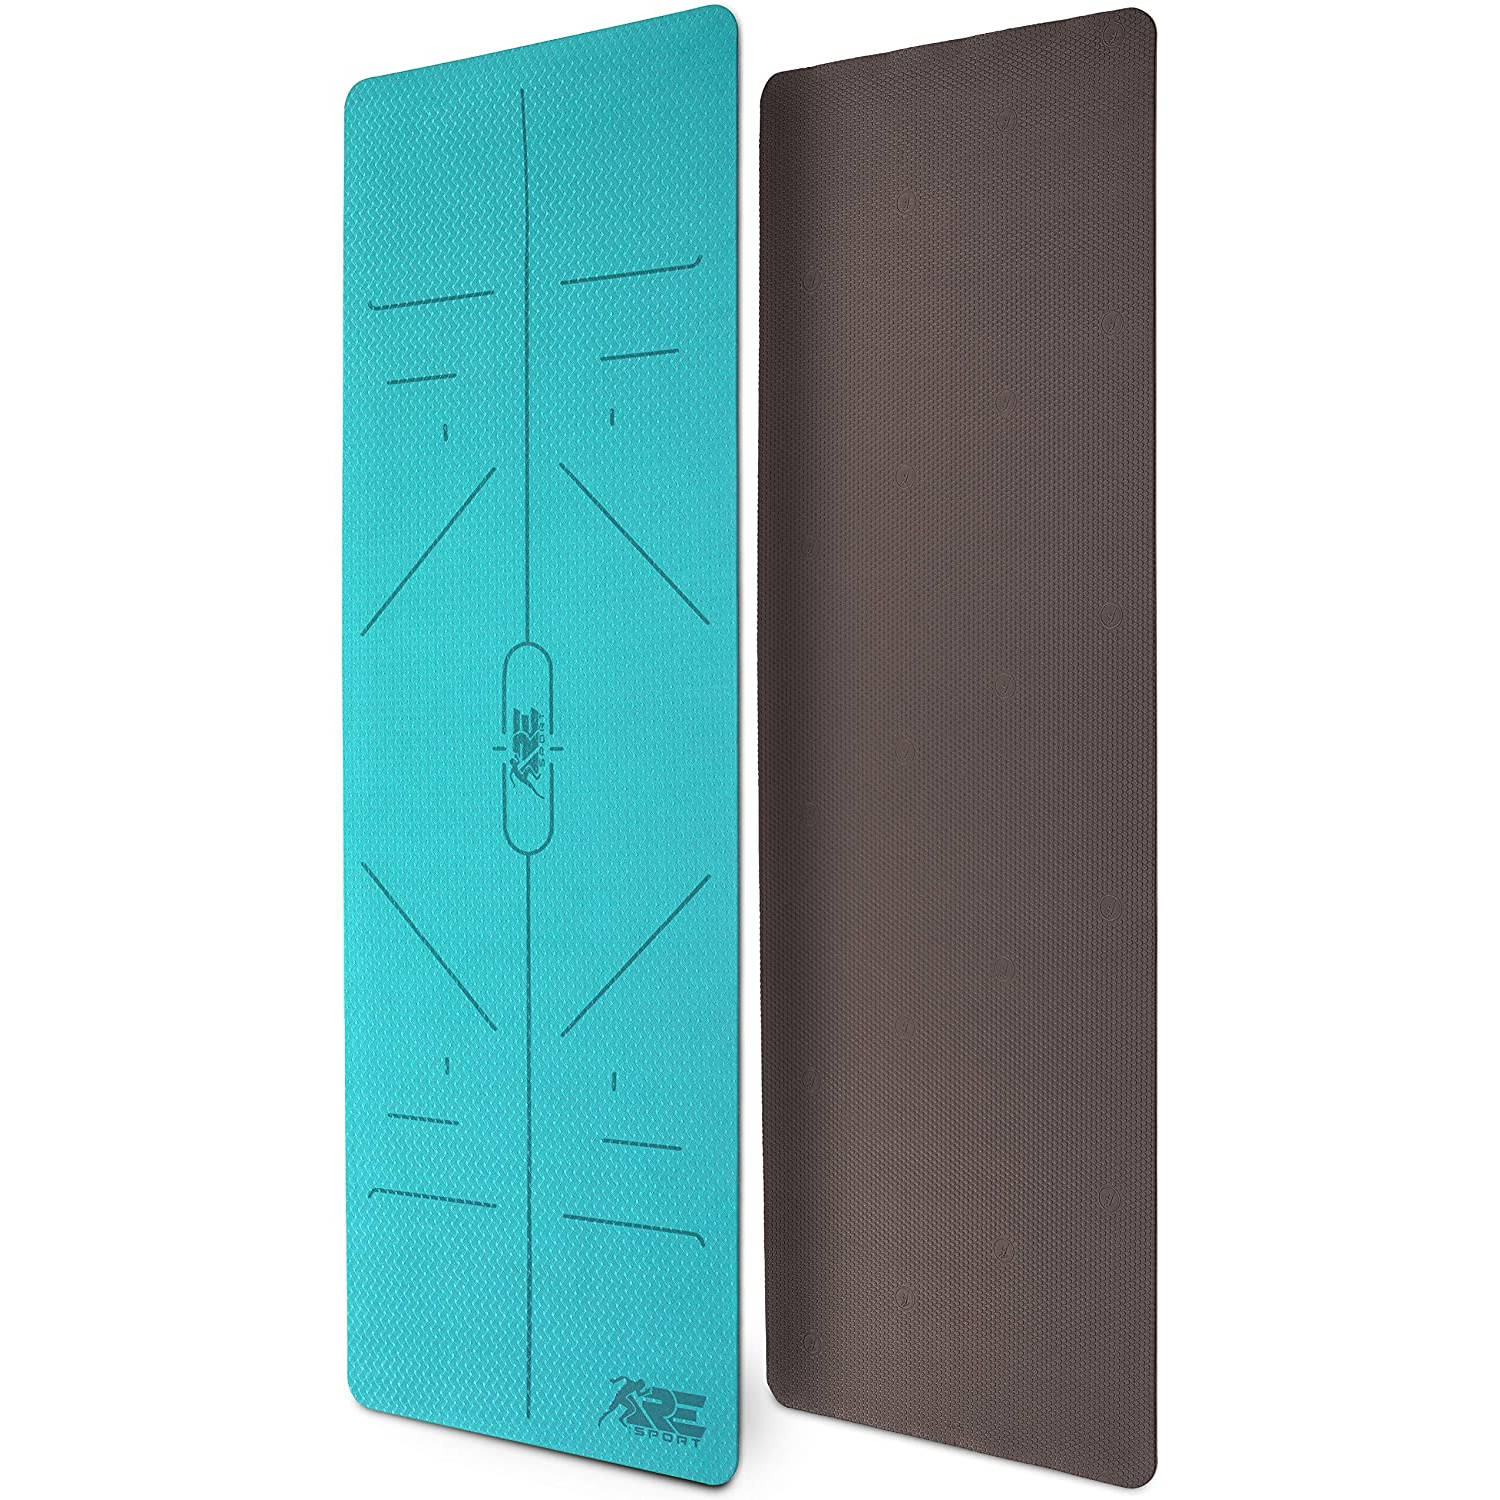 Yogamat, turquoise-coffee, 183 x 61 x 0,6 cm, fitnessmat, gymmat, gymnastiekmat, logo